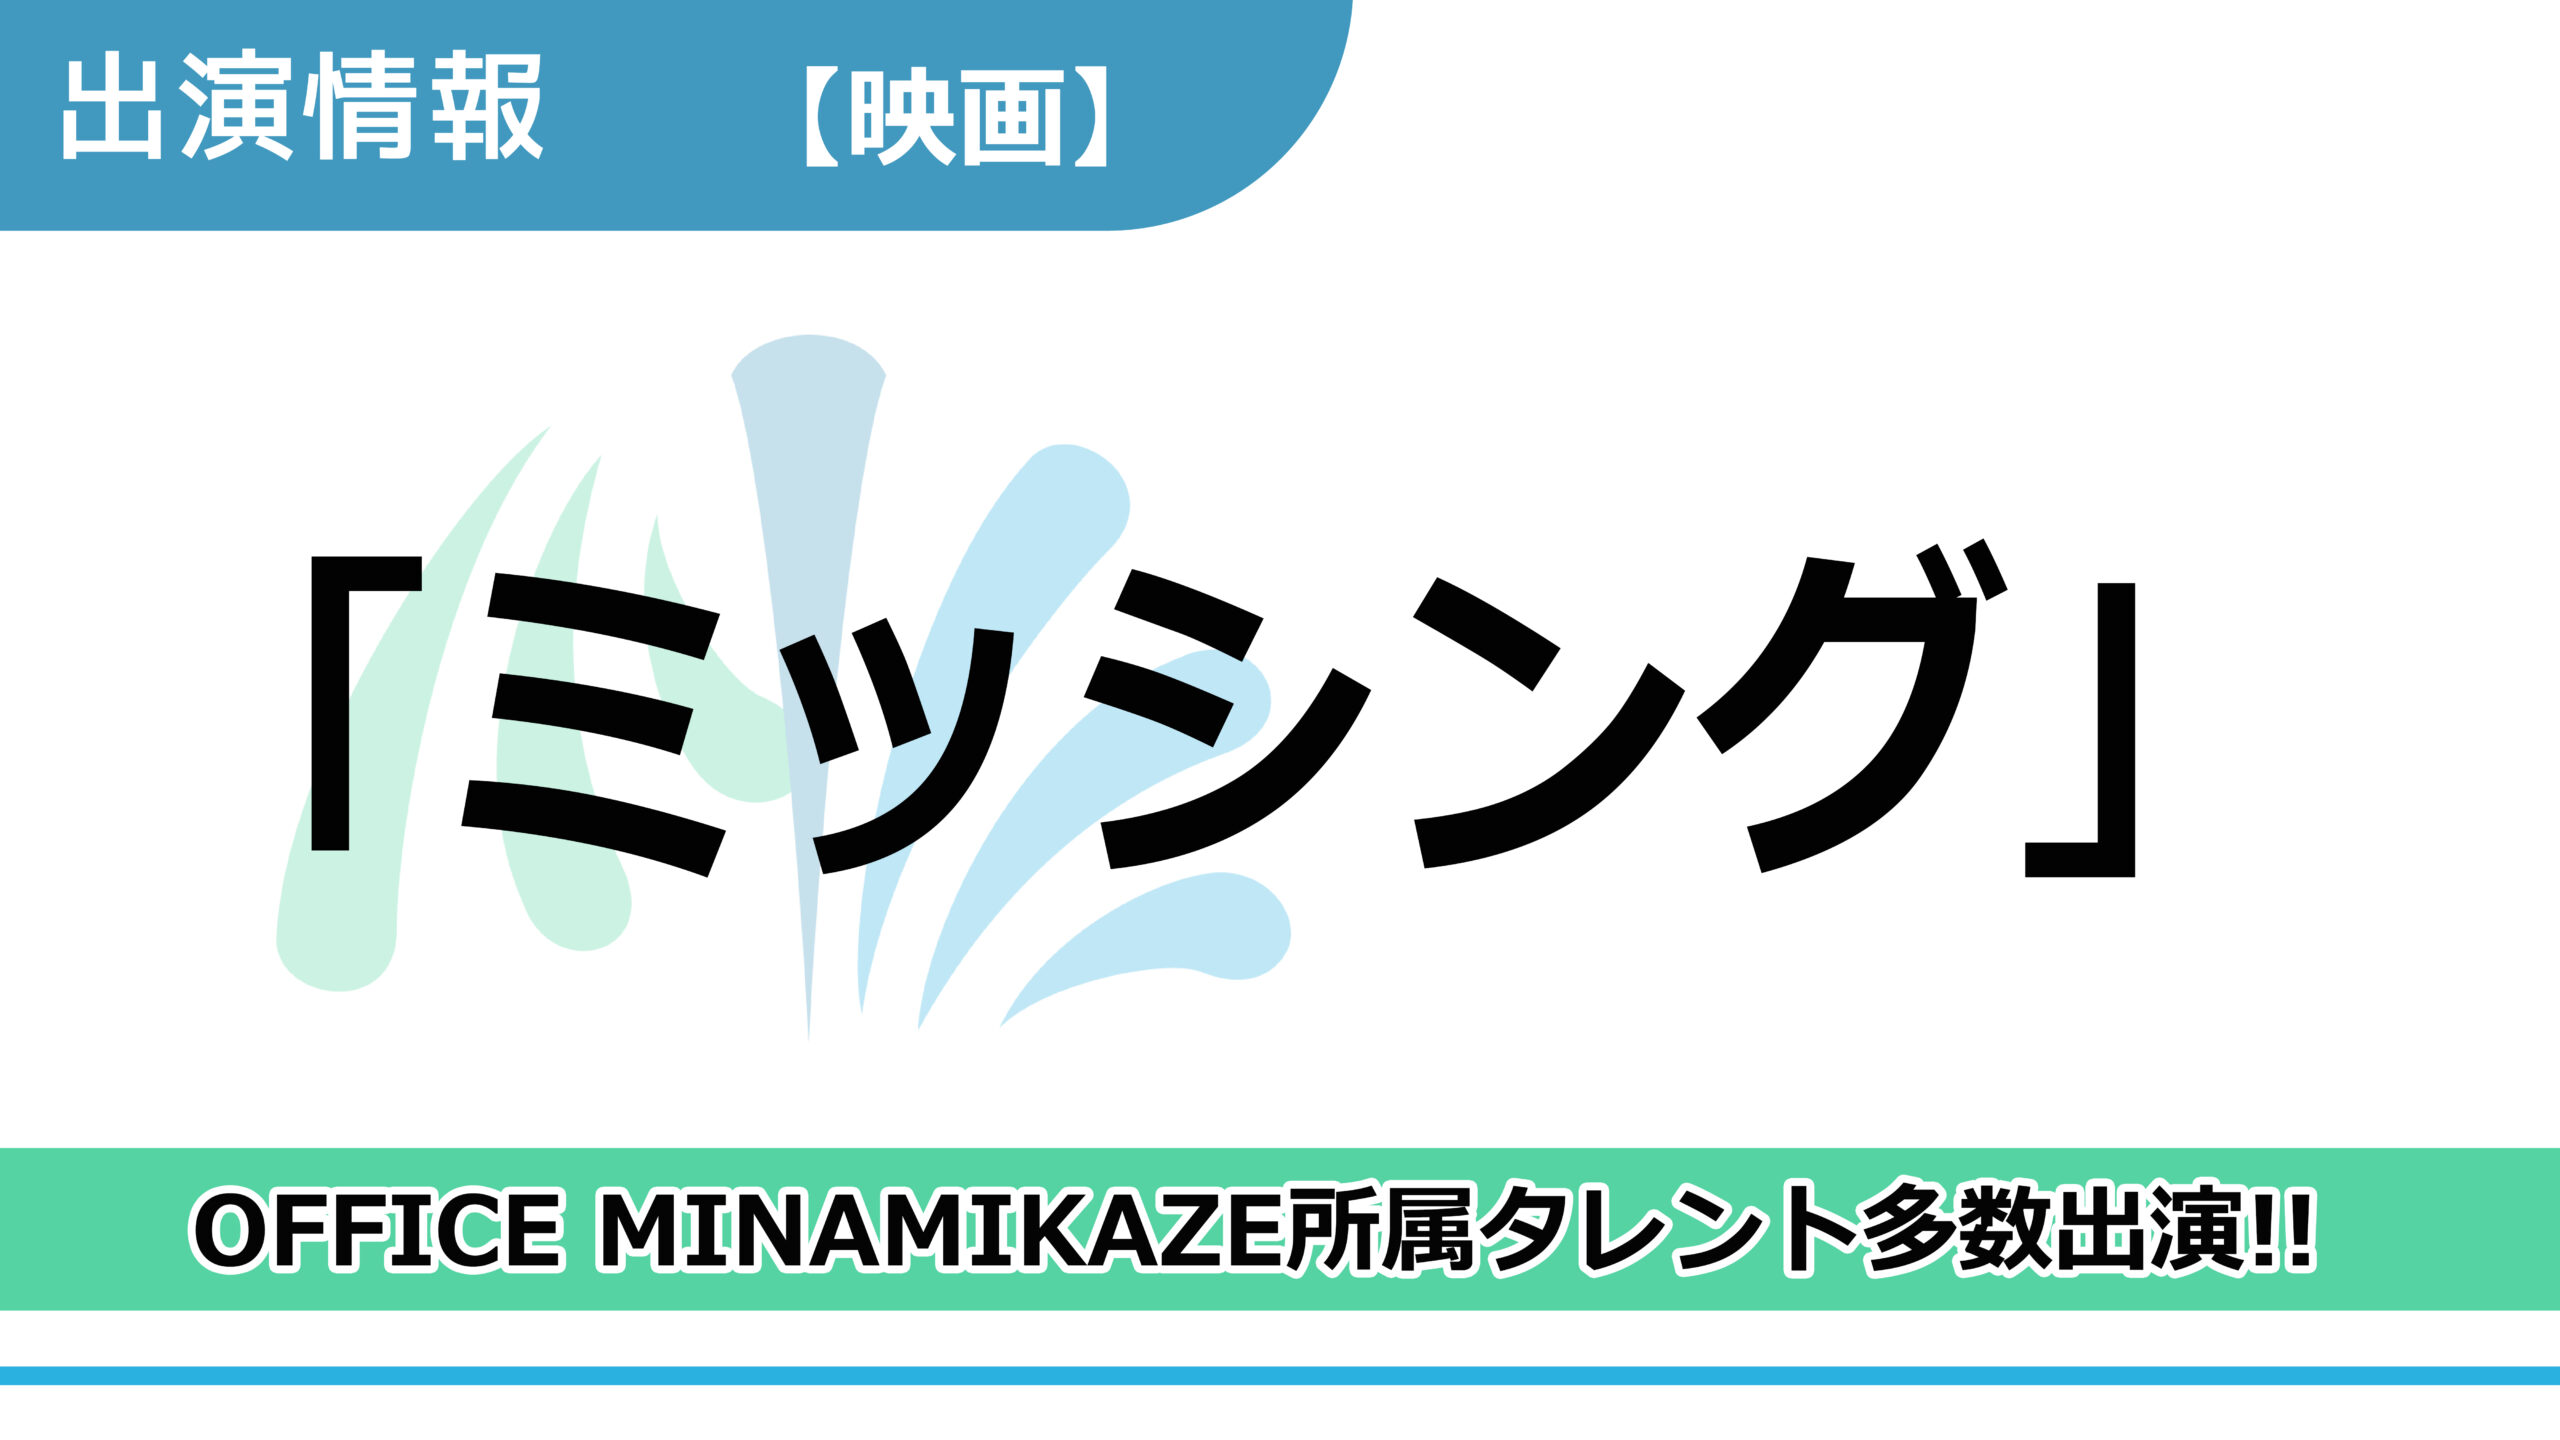 【出演情報】OFFICE MINAMIKAZE所属タレント多数出演 / 映画「ミッシング」